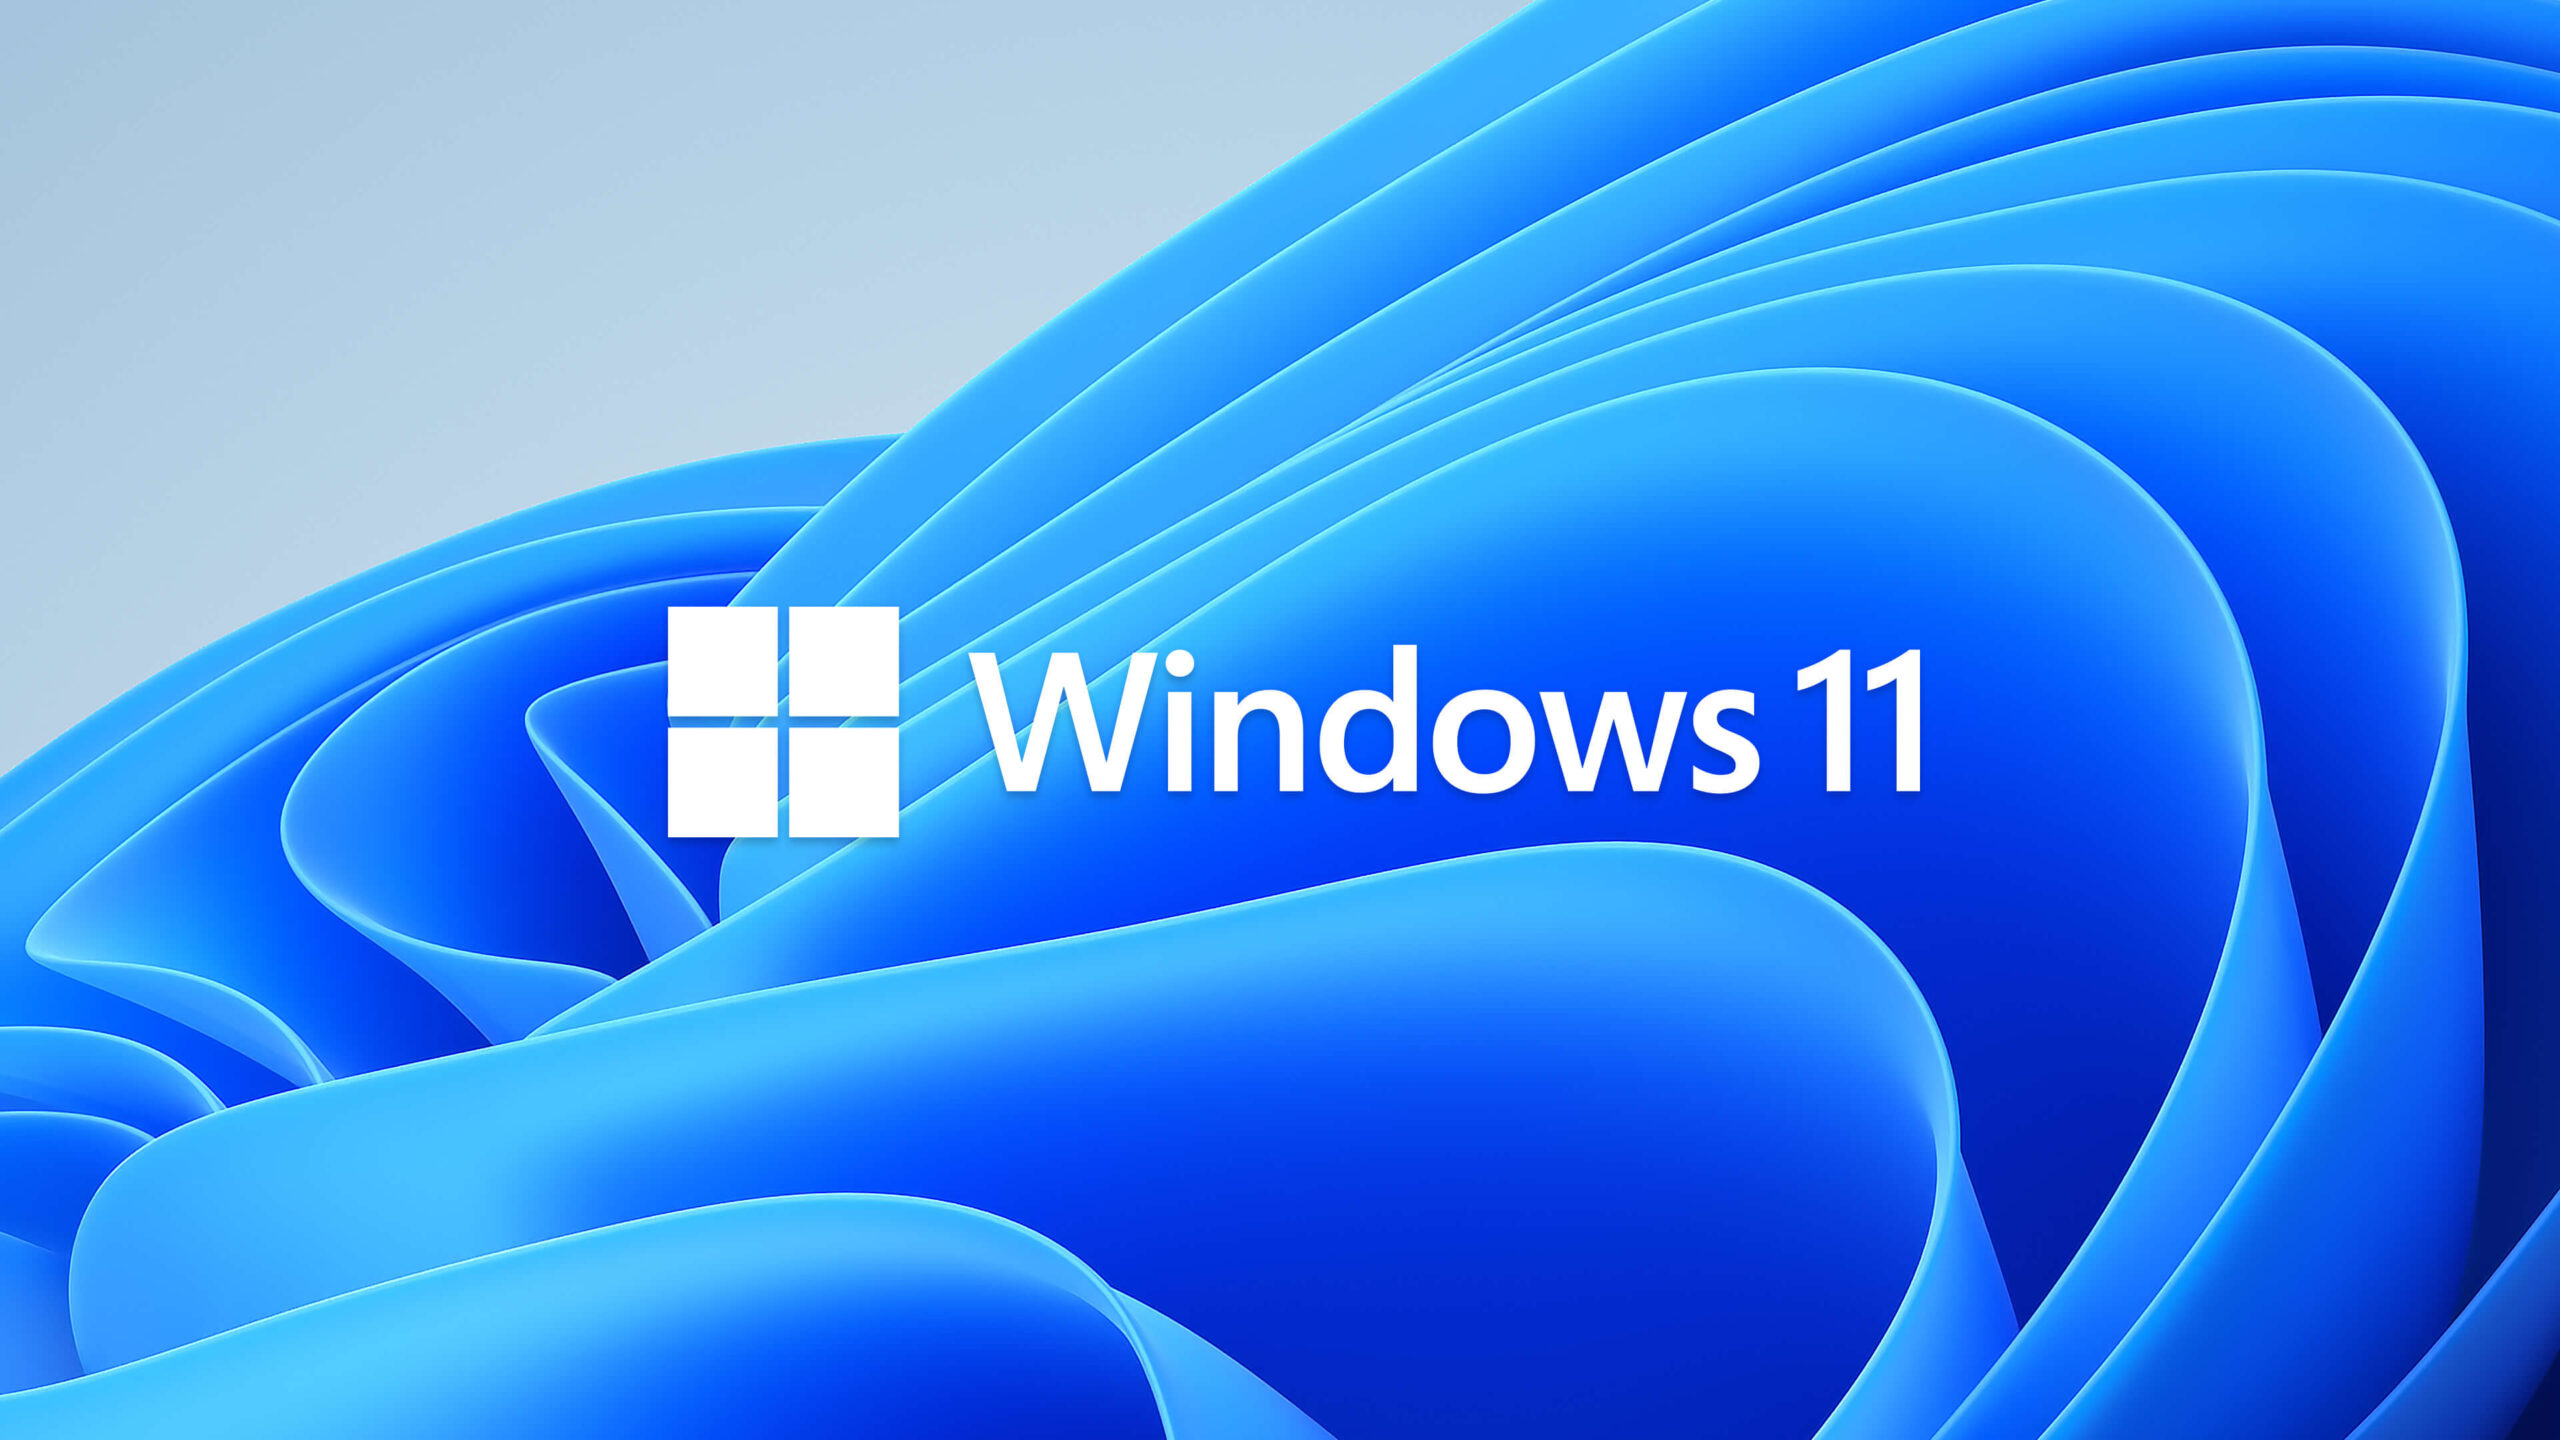 Tworzenie zrzutu ekranu wideo w systemie Windows 11 - zdjęcie